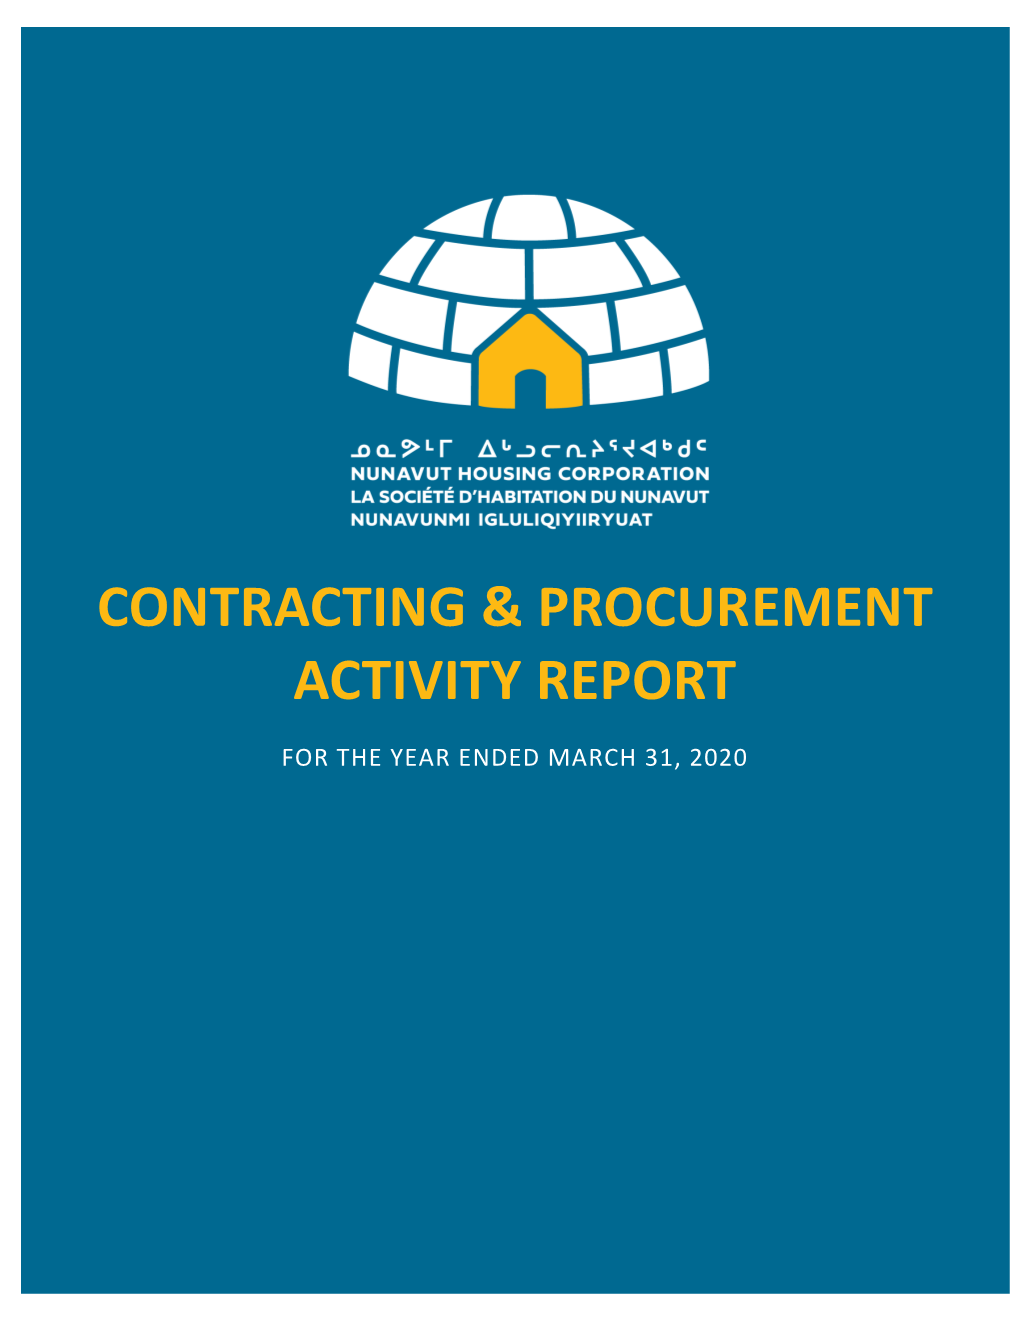 Contracting & Procurement Activity Report